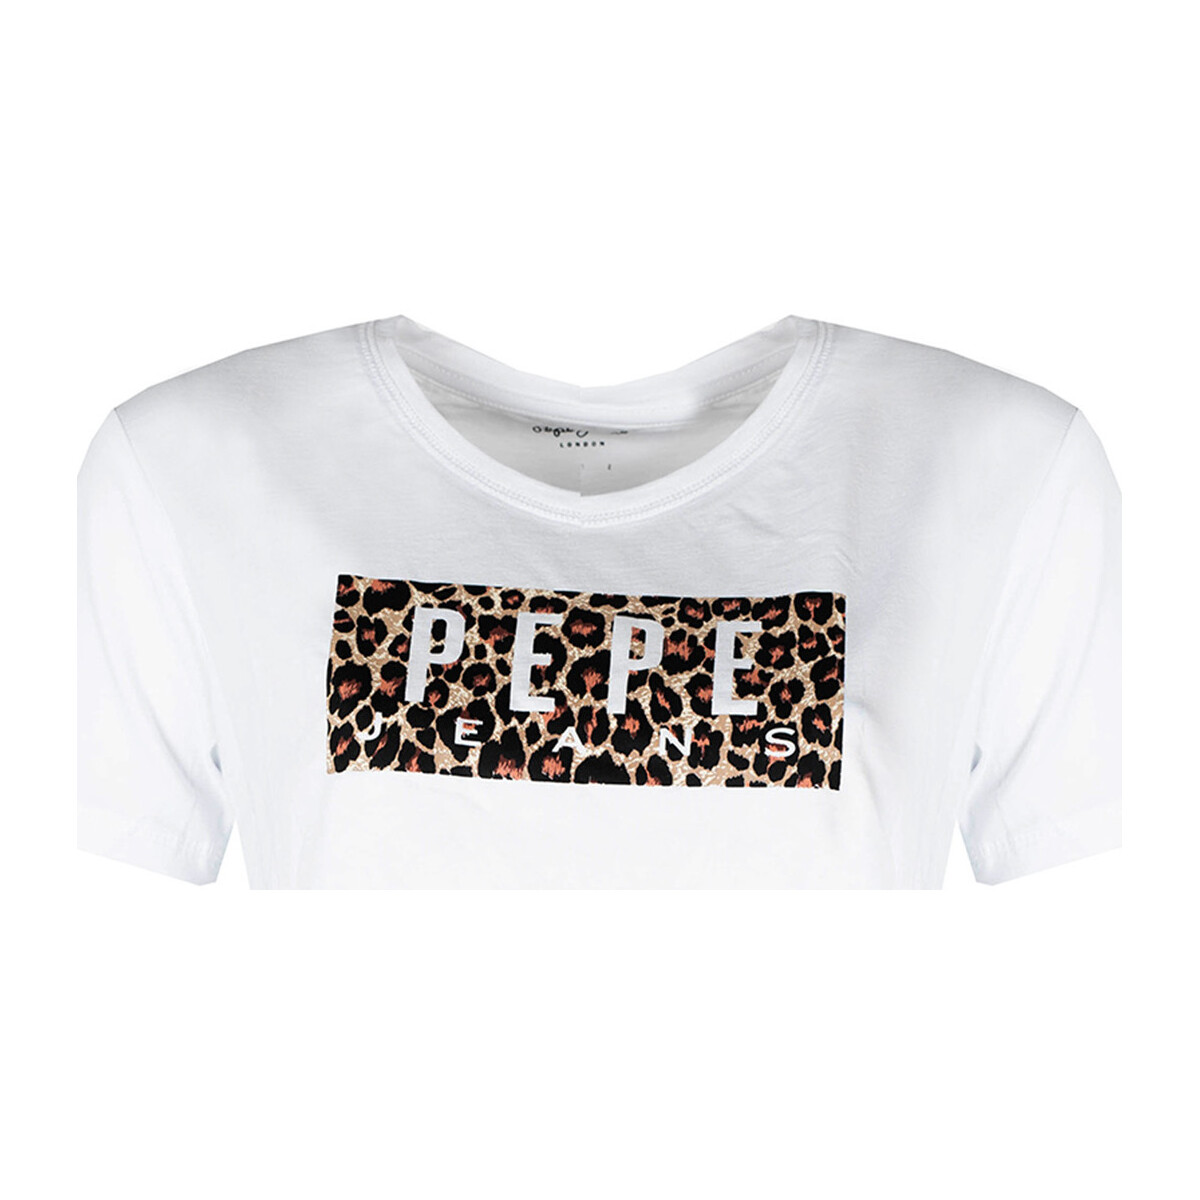 tekstylia Damskie T-shirty z krótkim rękawem Pepe jeans PL504996 | Cristinas Biały